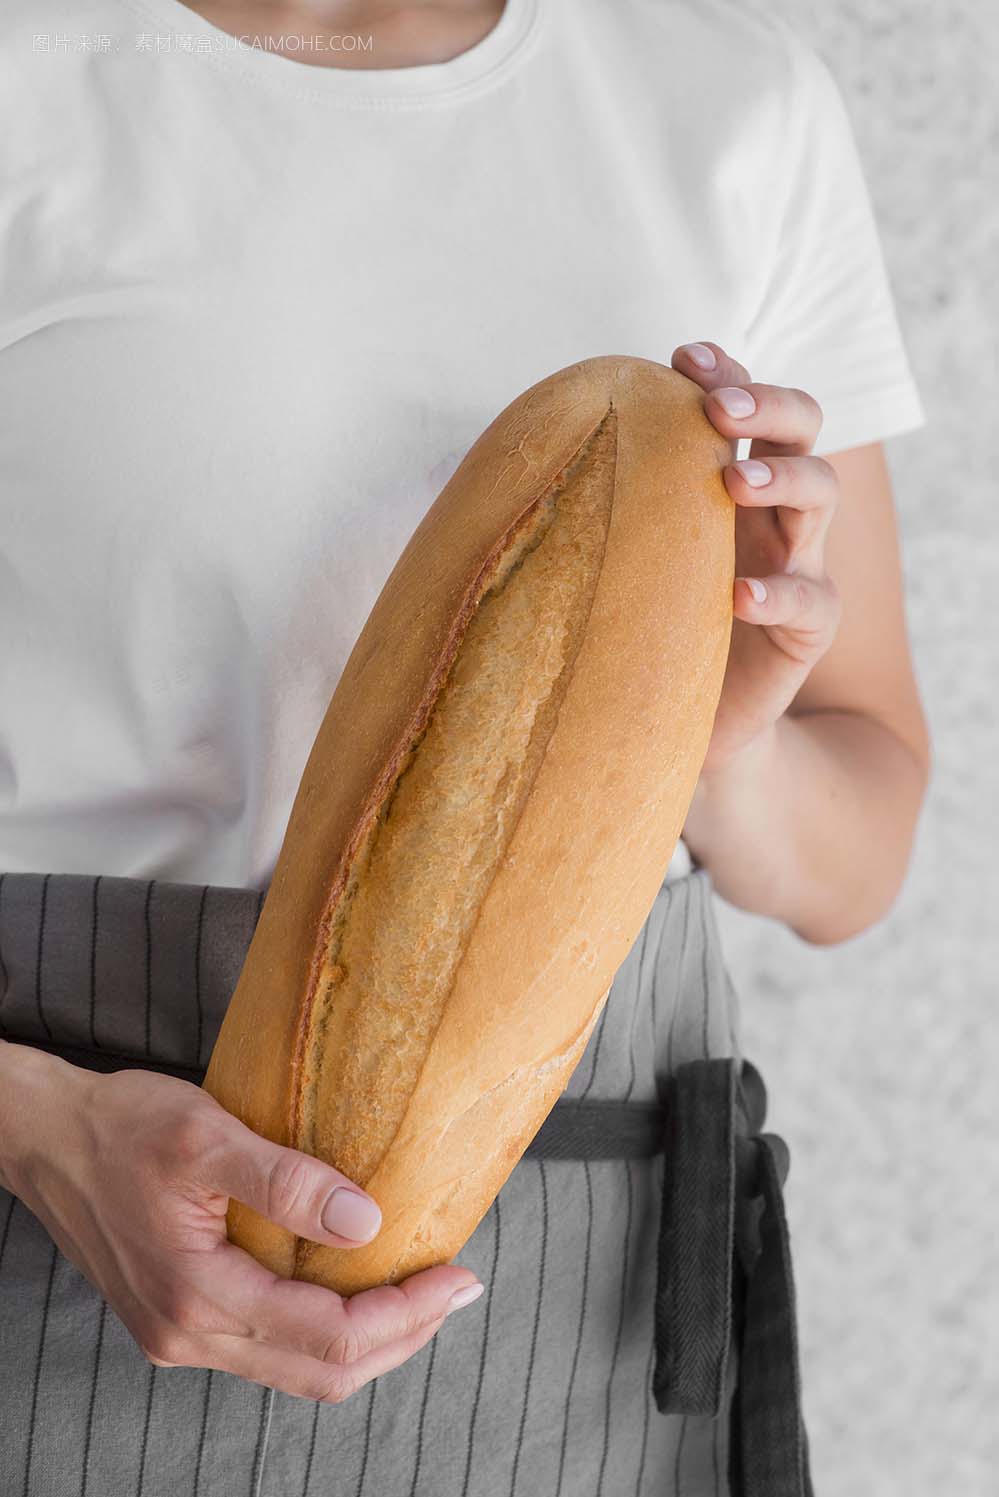 妇女拿着新鲜的法式面包close-up-woman-holding-fresh-baguette